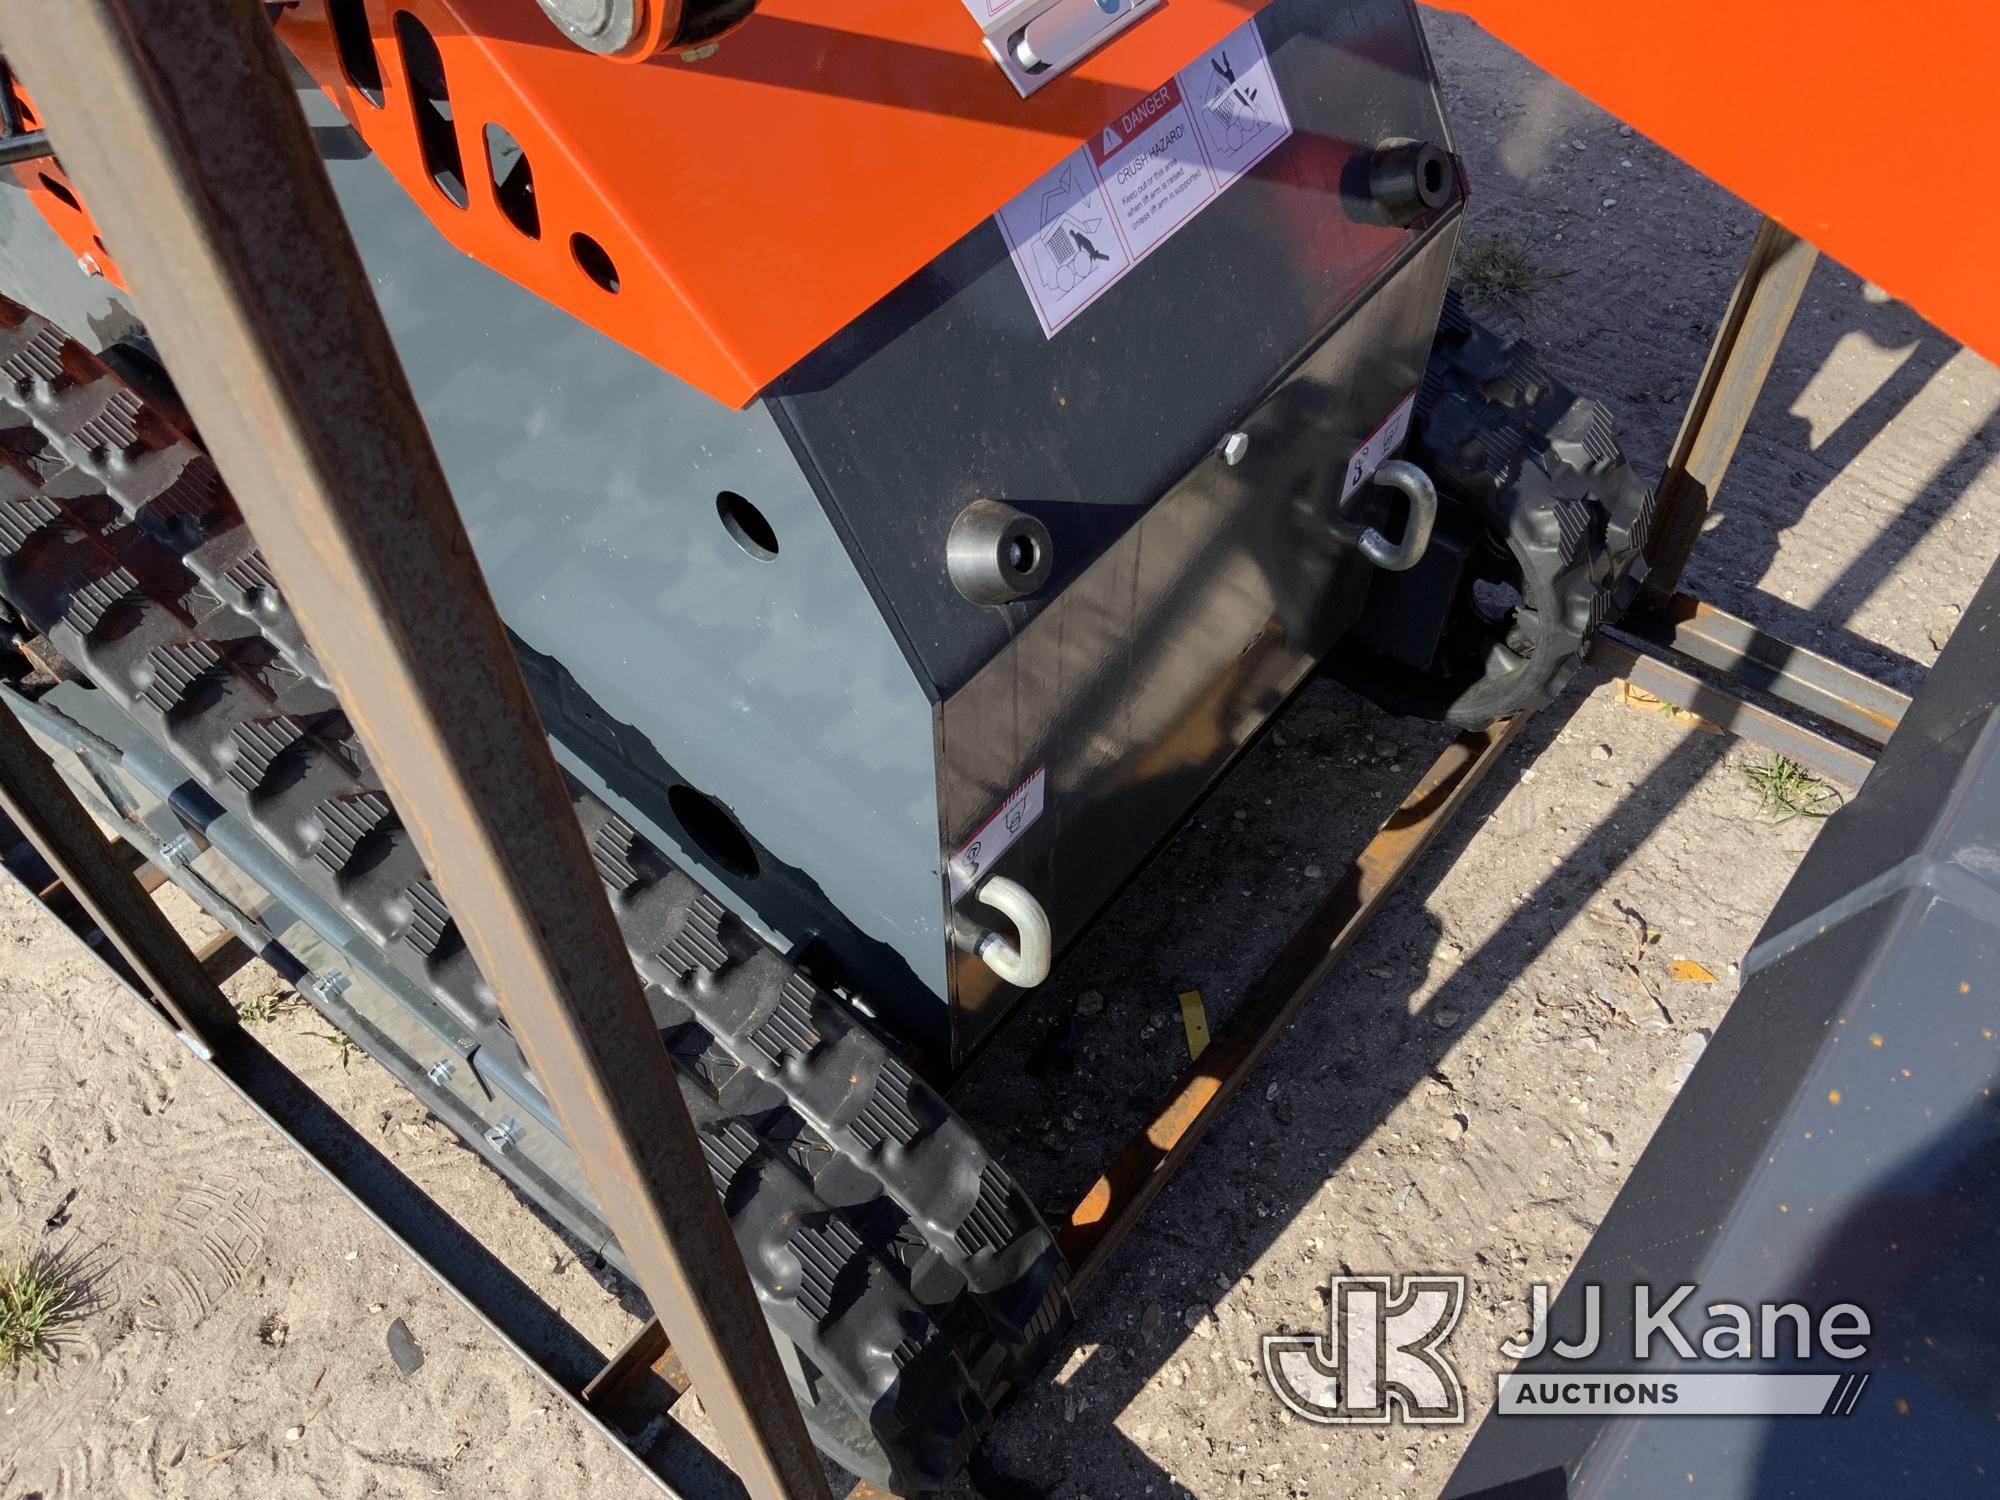 (Westlake, FL) 2024 AGROTK YSRT14 Walk-Behind Tracked Skid Steer Loader New/Unused